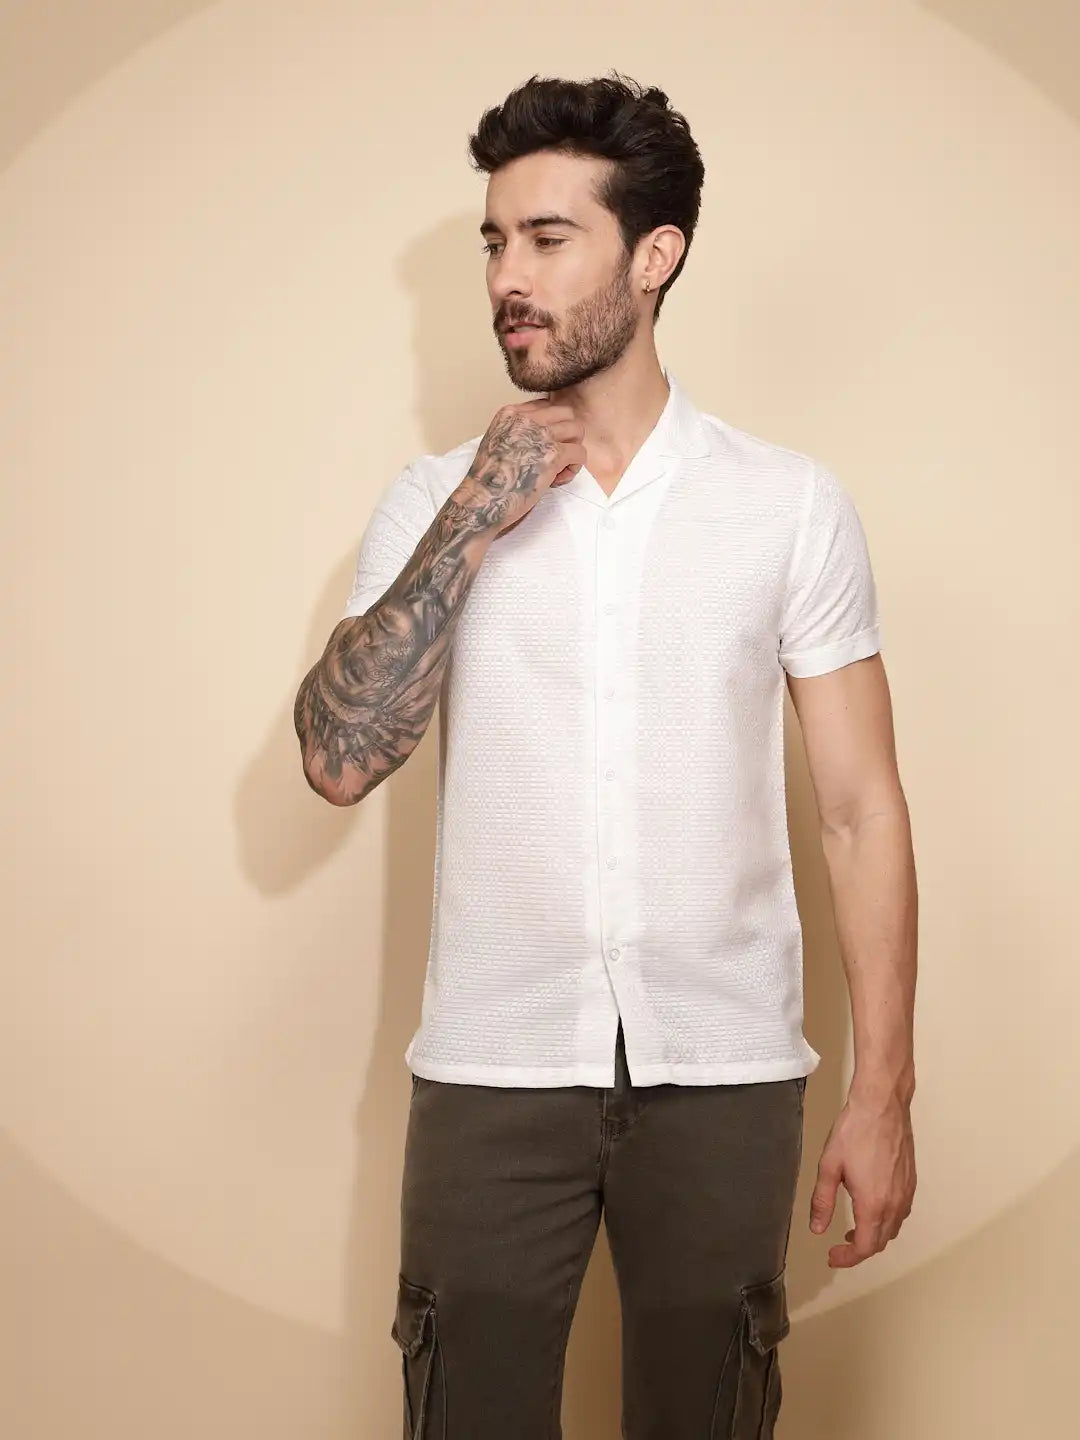 White Polyester Blend Regular Fit Shirt For Men